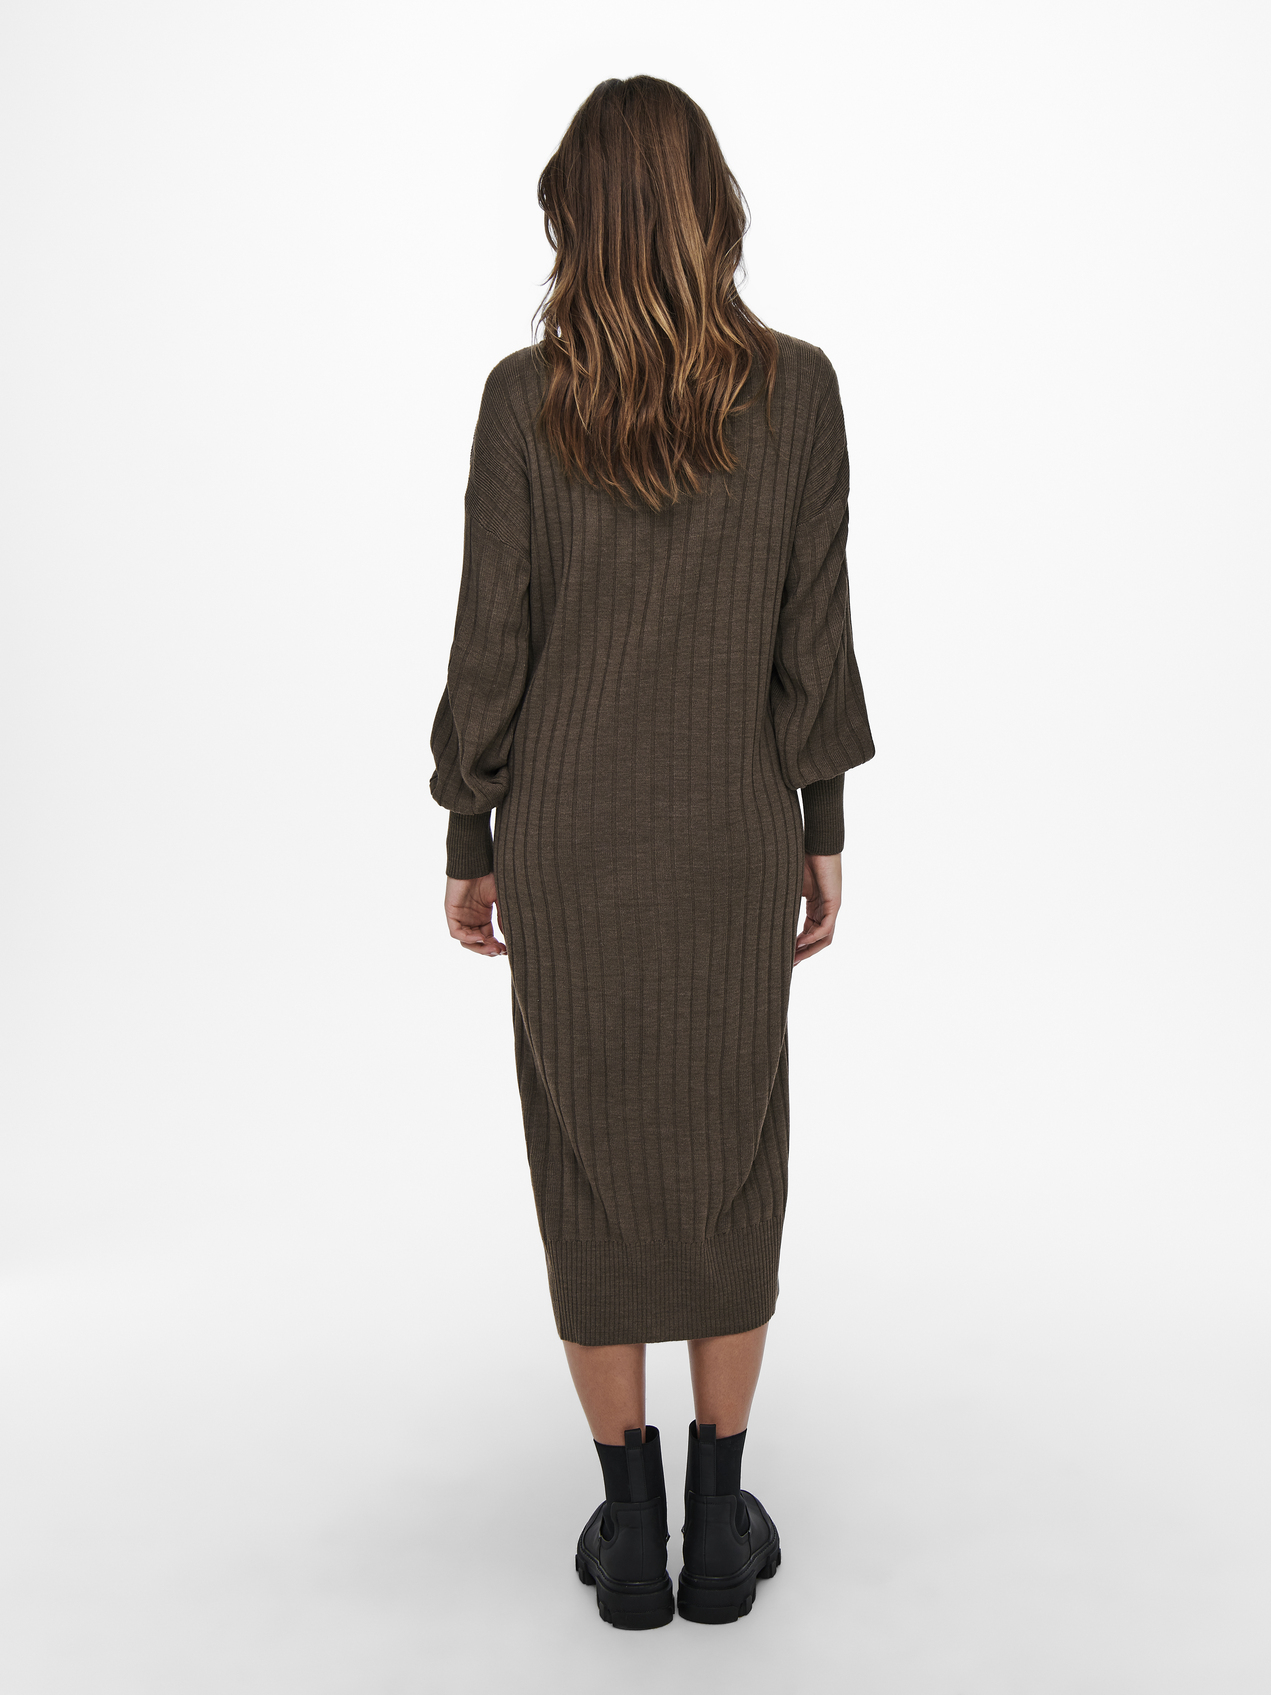 FINAL SALE - Tessa V-neck knit midi dress, CHESTNUT, large